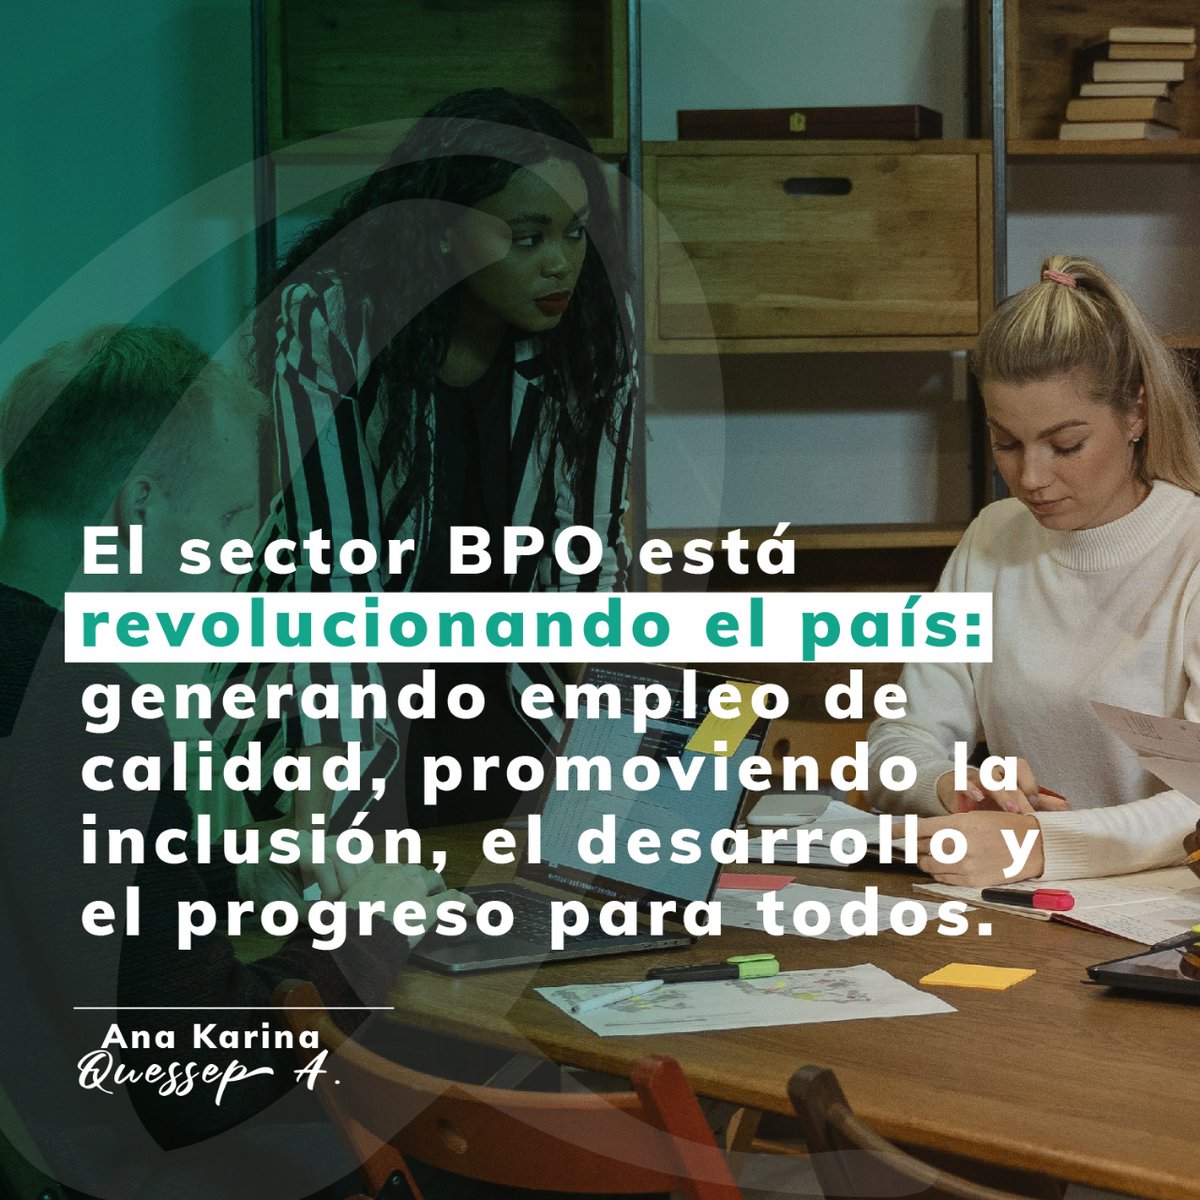 El sector BPO impulsa la economía y la inclusión laboral en Colombia al generar empleo de calidad y ofrecer oportunidades a personas de diversos trasfondos. Su enfoque inclusivo fortalece el tejido social y económico del país. #BPOColombia